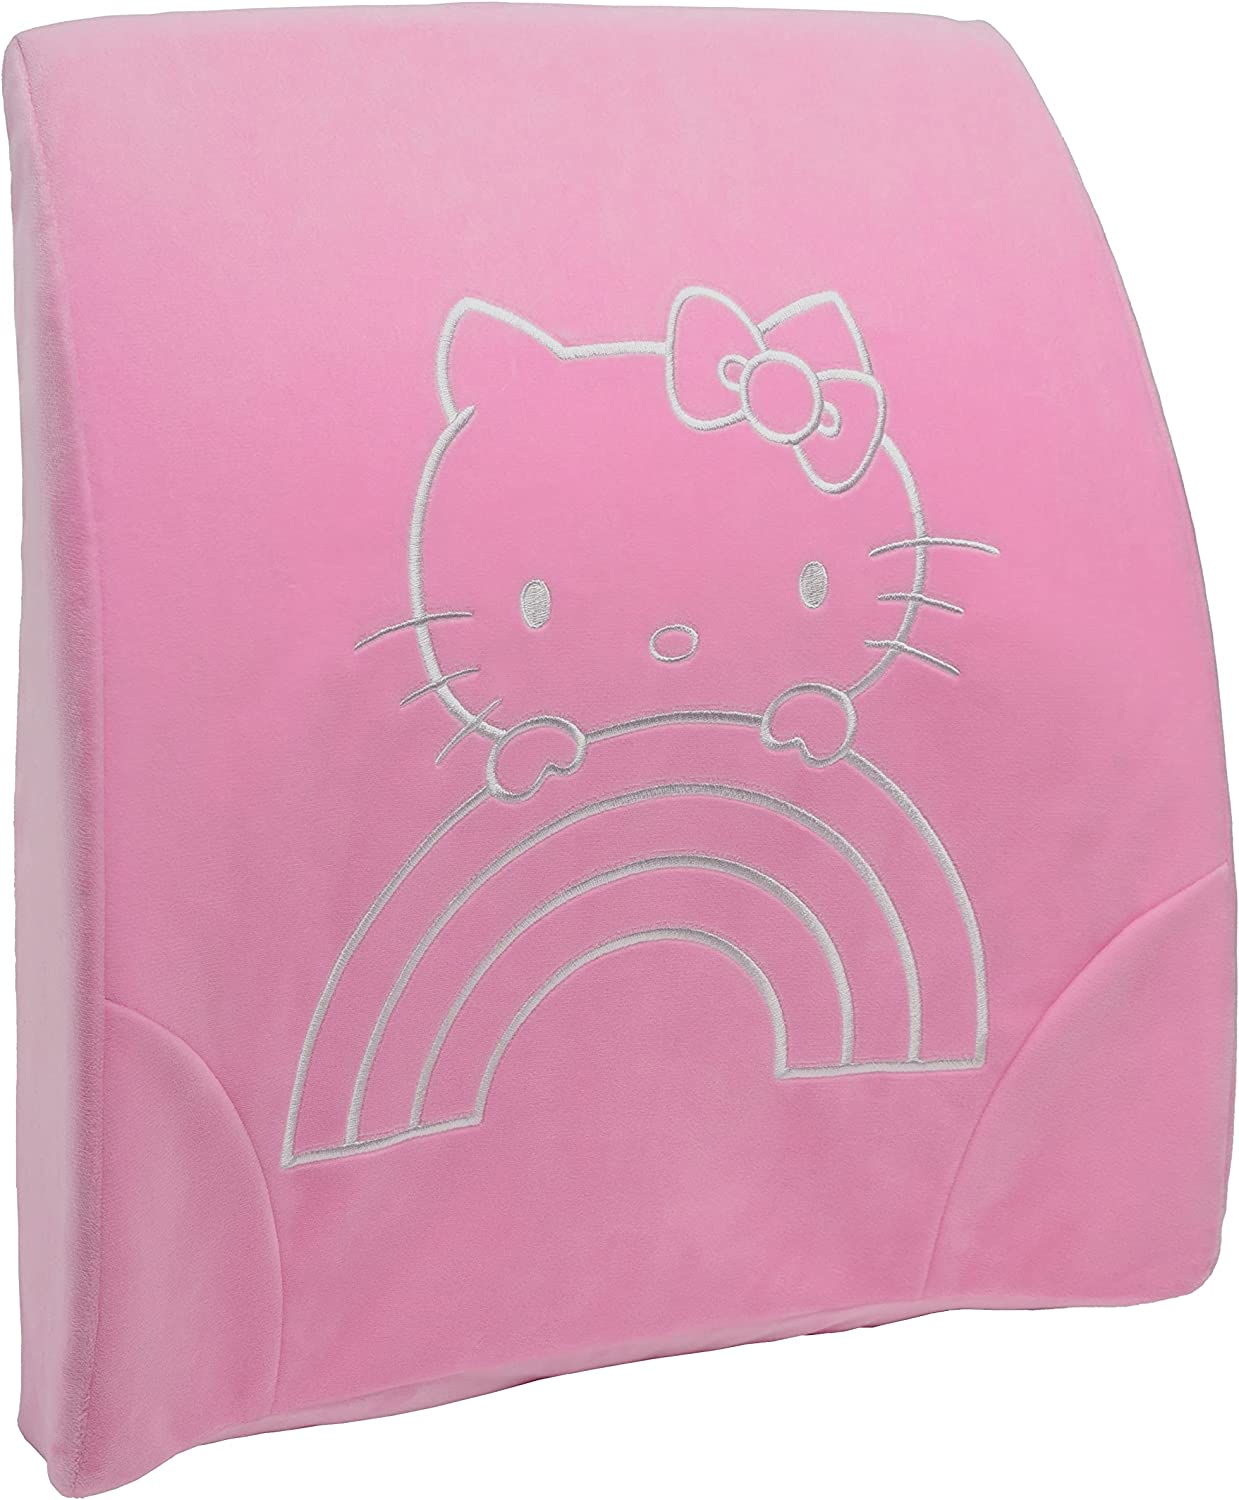 Razer Lumbar Cushion Hello Kitty and Friends Edition  ランバークッション ハローキティ アンド フレンズ エディション thumbnail 2